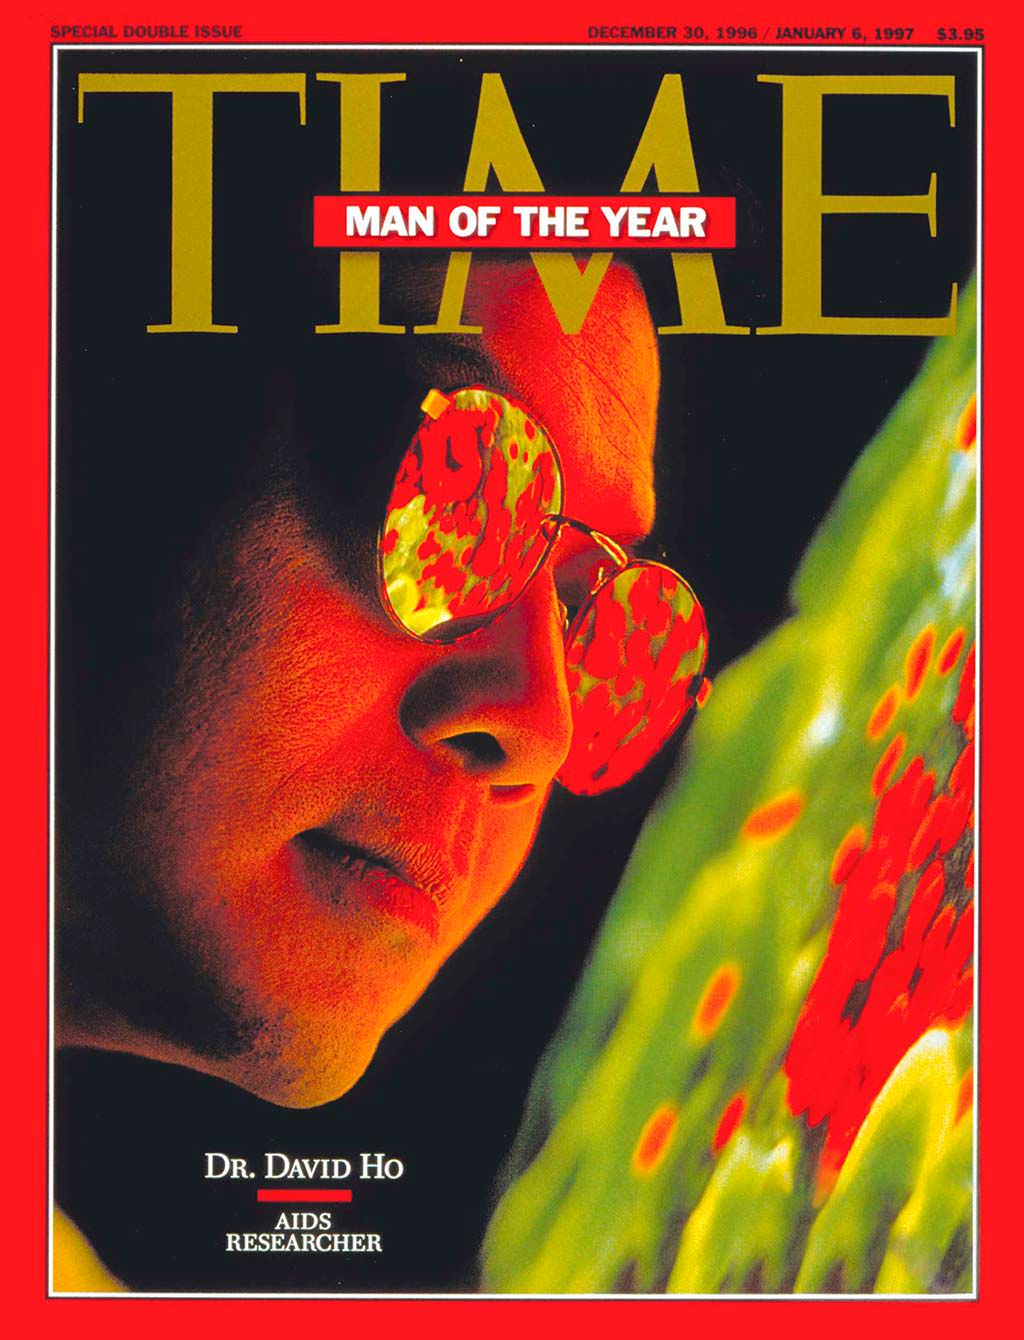 1996 год. Учёный исследователь ВИЧ Дэвид Хо на обложке Time